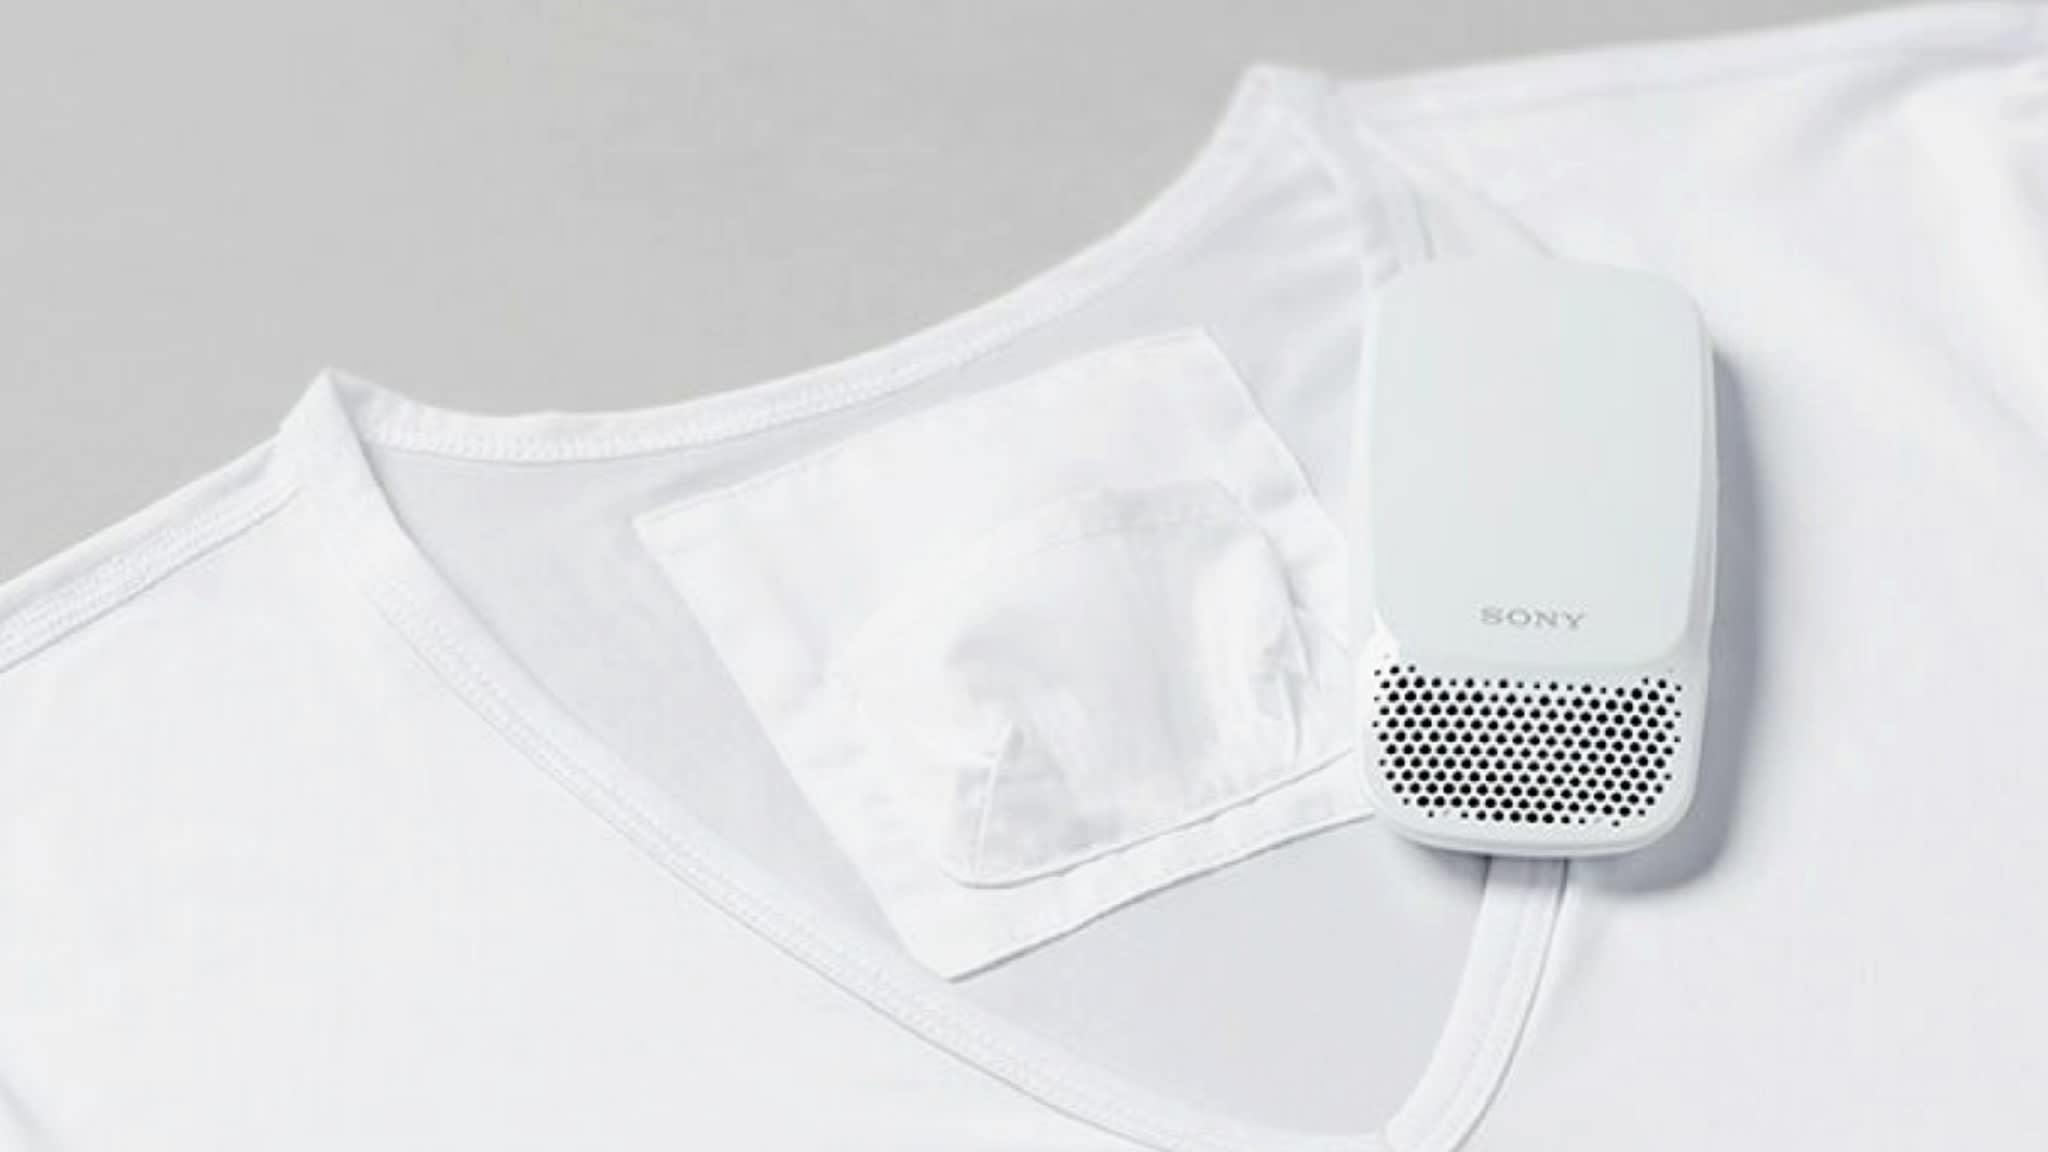 Reon Pocket : Chiếc điều hòa gắn áo từ Nhật Bản sẽ giúp bạn không còn cảm giác nóng quanh cổ